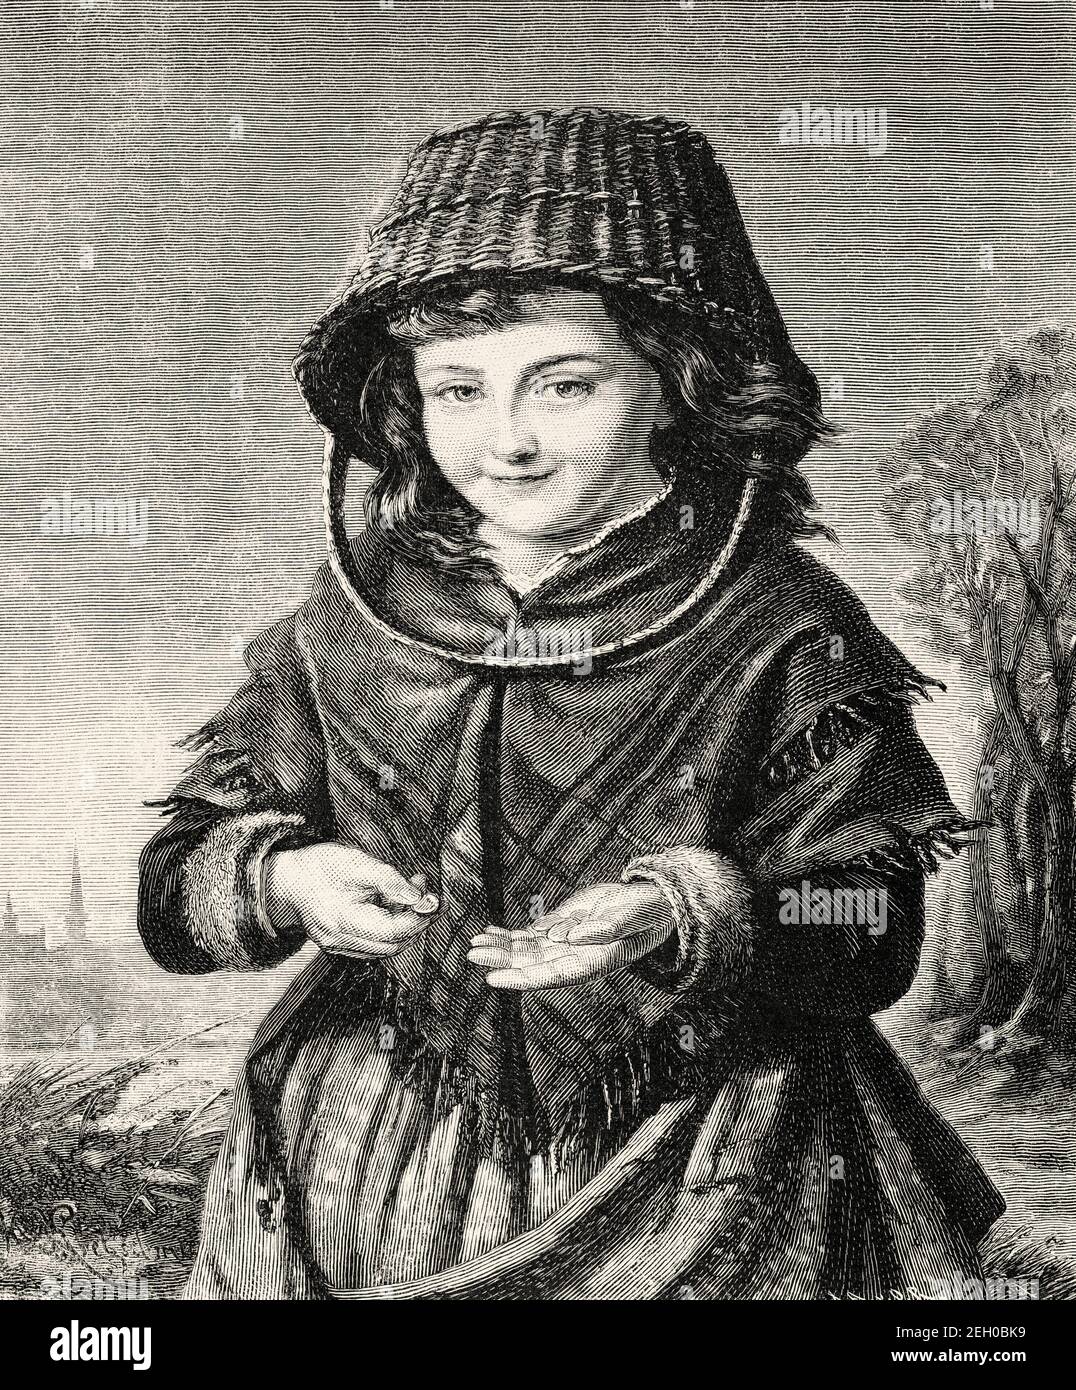 Junge Mädchen in der typischen neunzehnten Jahrhundert Zeitraum Kostüm  wieder auf dem Markt, Europa zu verkaufen gekleidet. Alte 19th Jahrhundert  gravierte Illustration von El Mundo Ilustrado 1879 Stockfotografie - Alamy